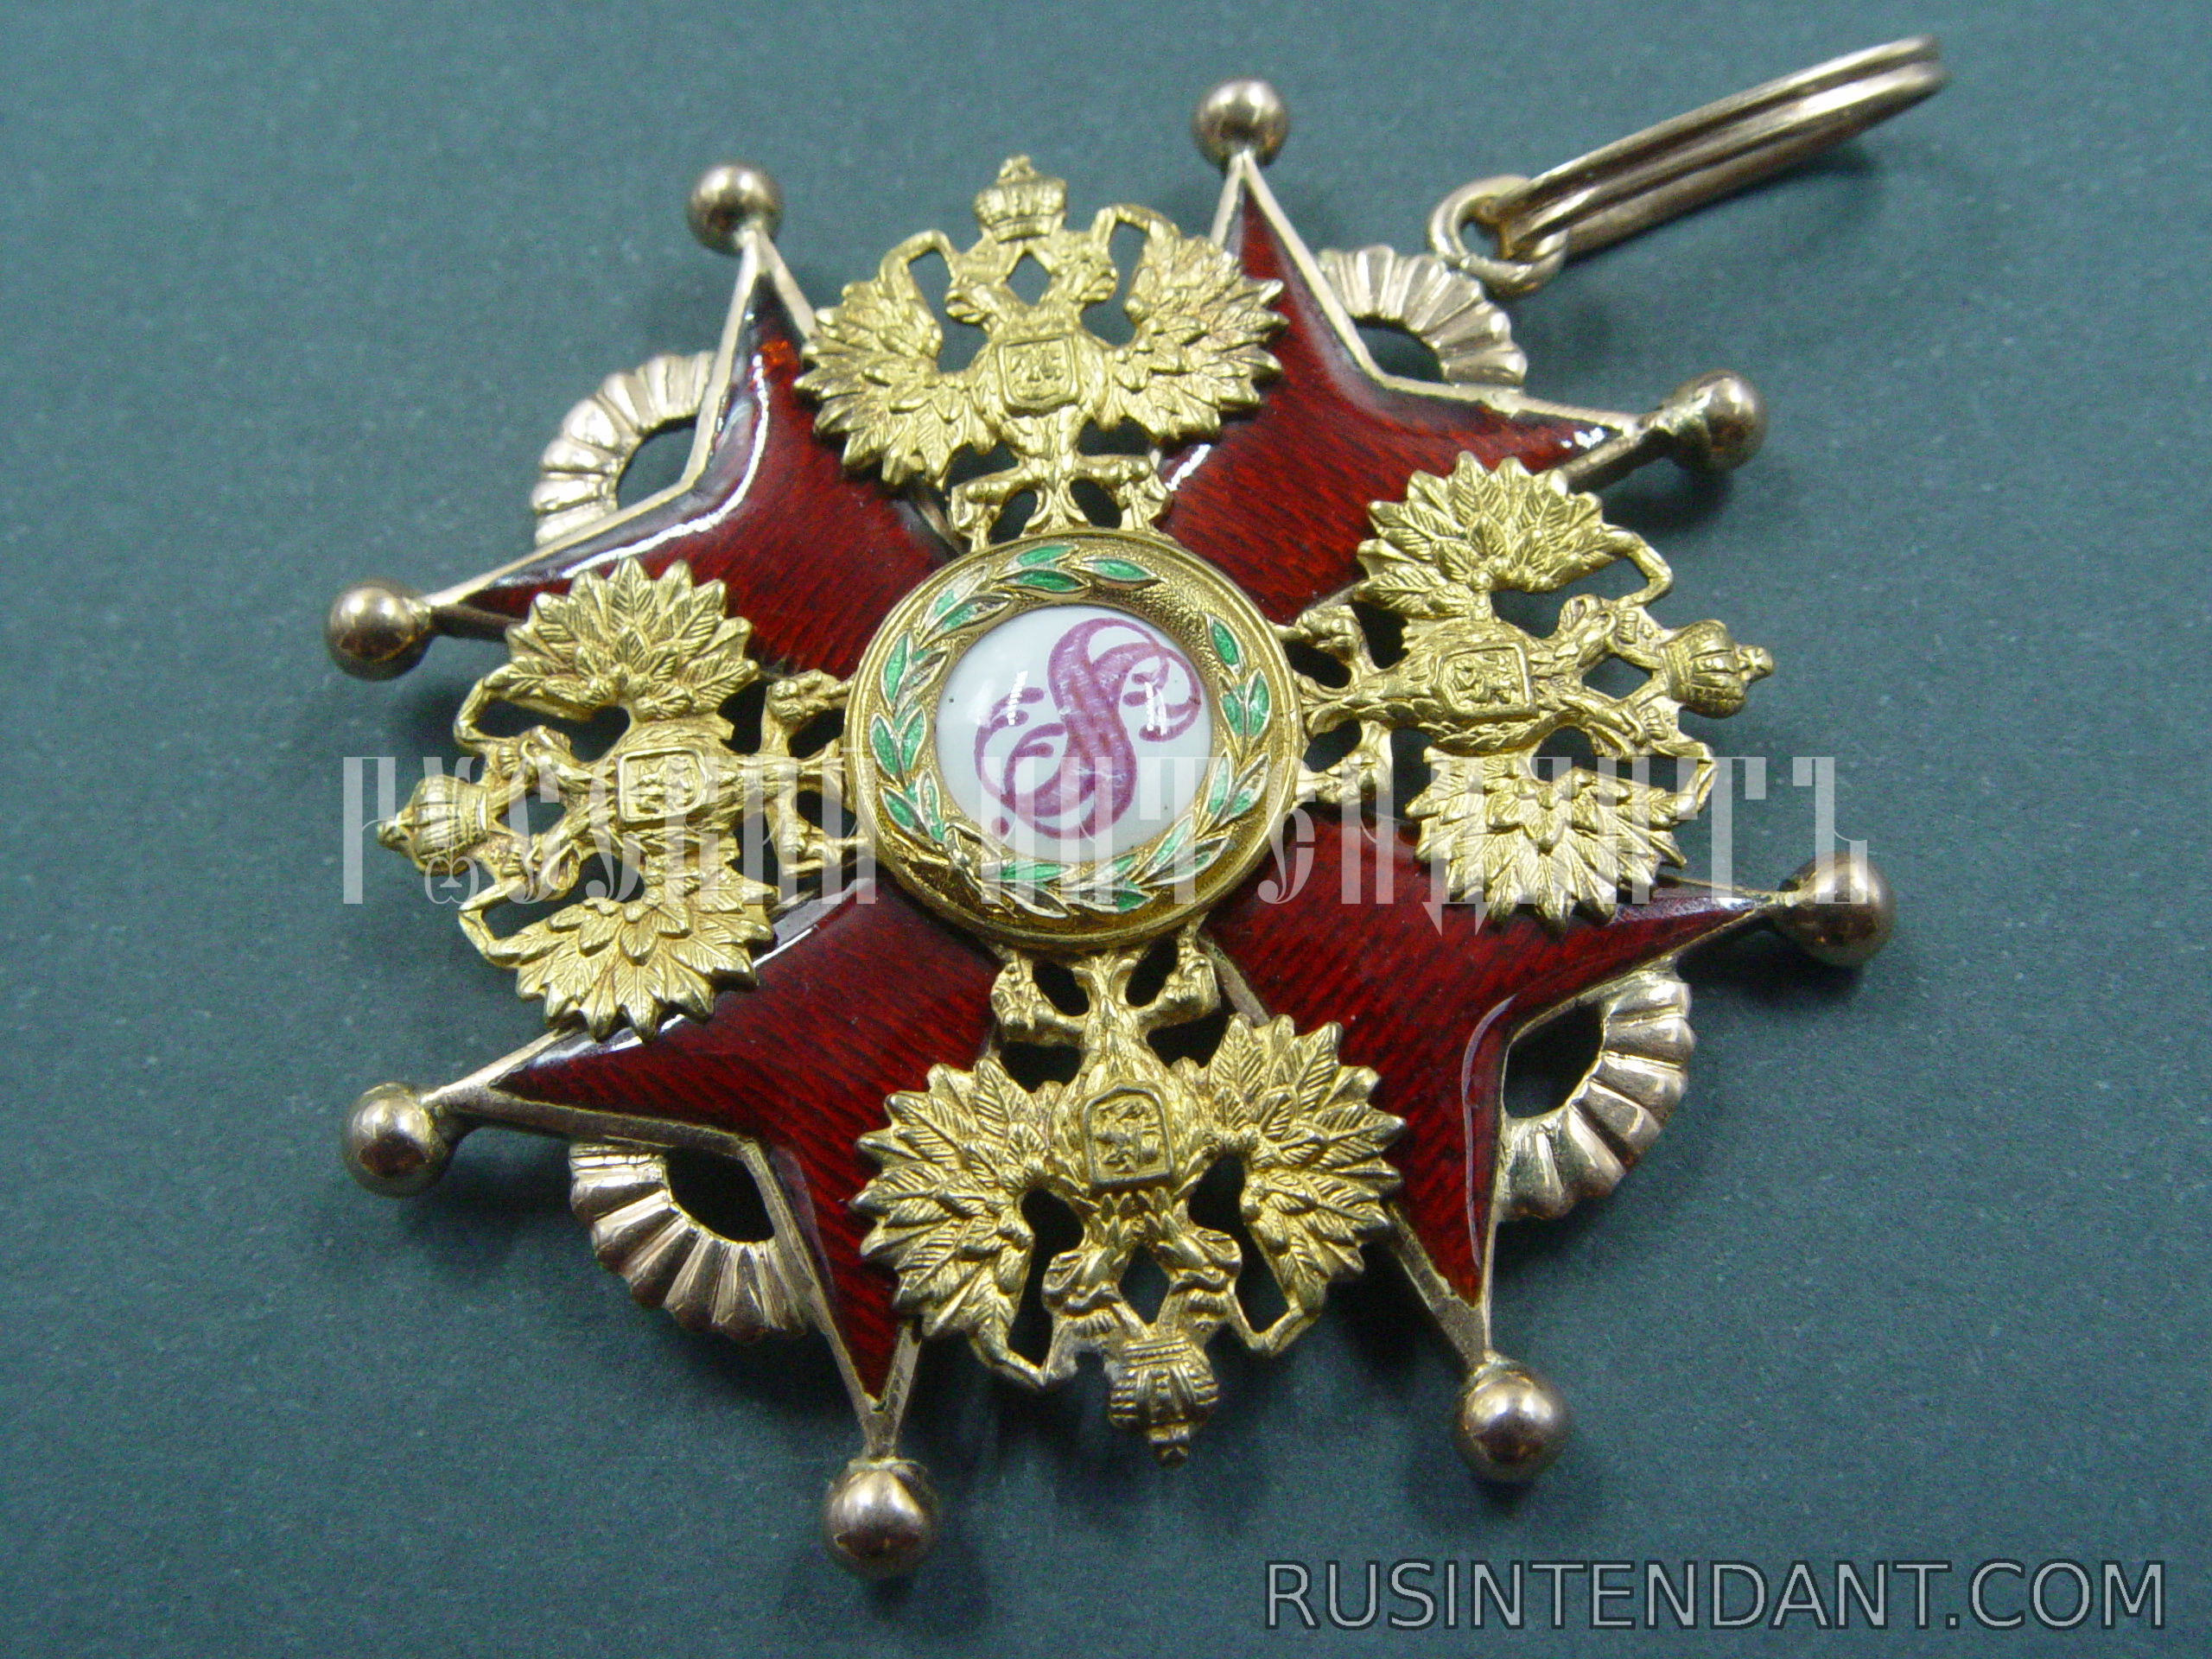 Фото 2: Орден Святого Станислава второй степени 